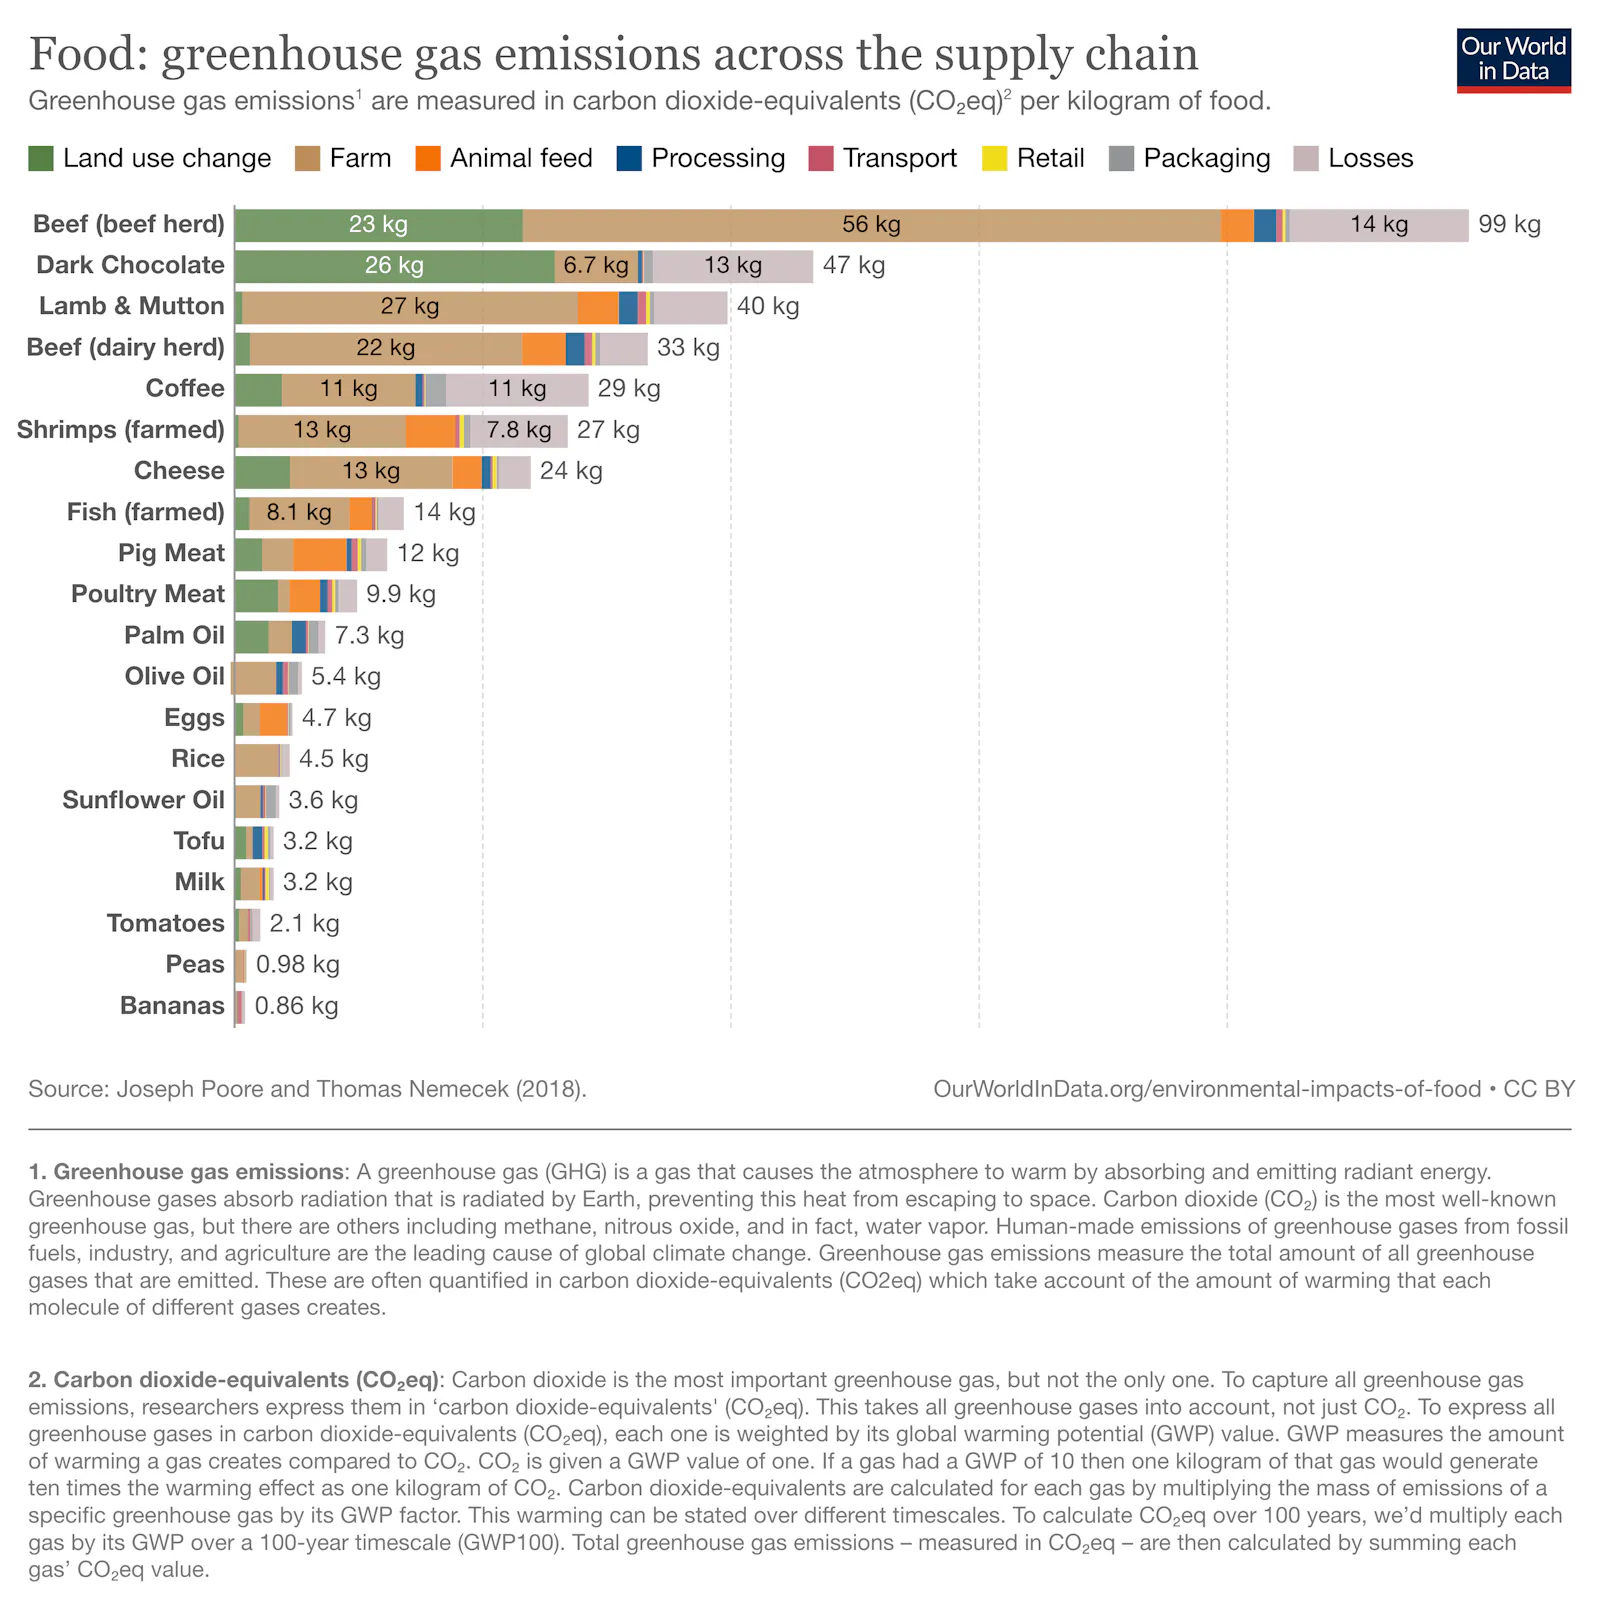 Balkendiagramm der CO2-Emissionen verschiedener Nahrungsmittel